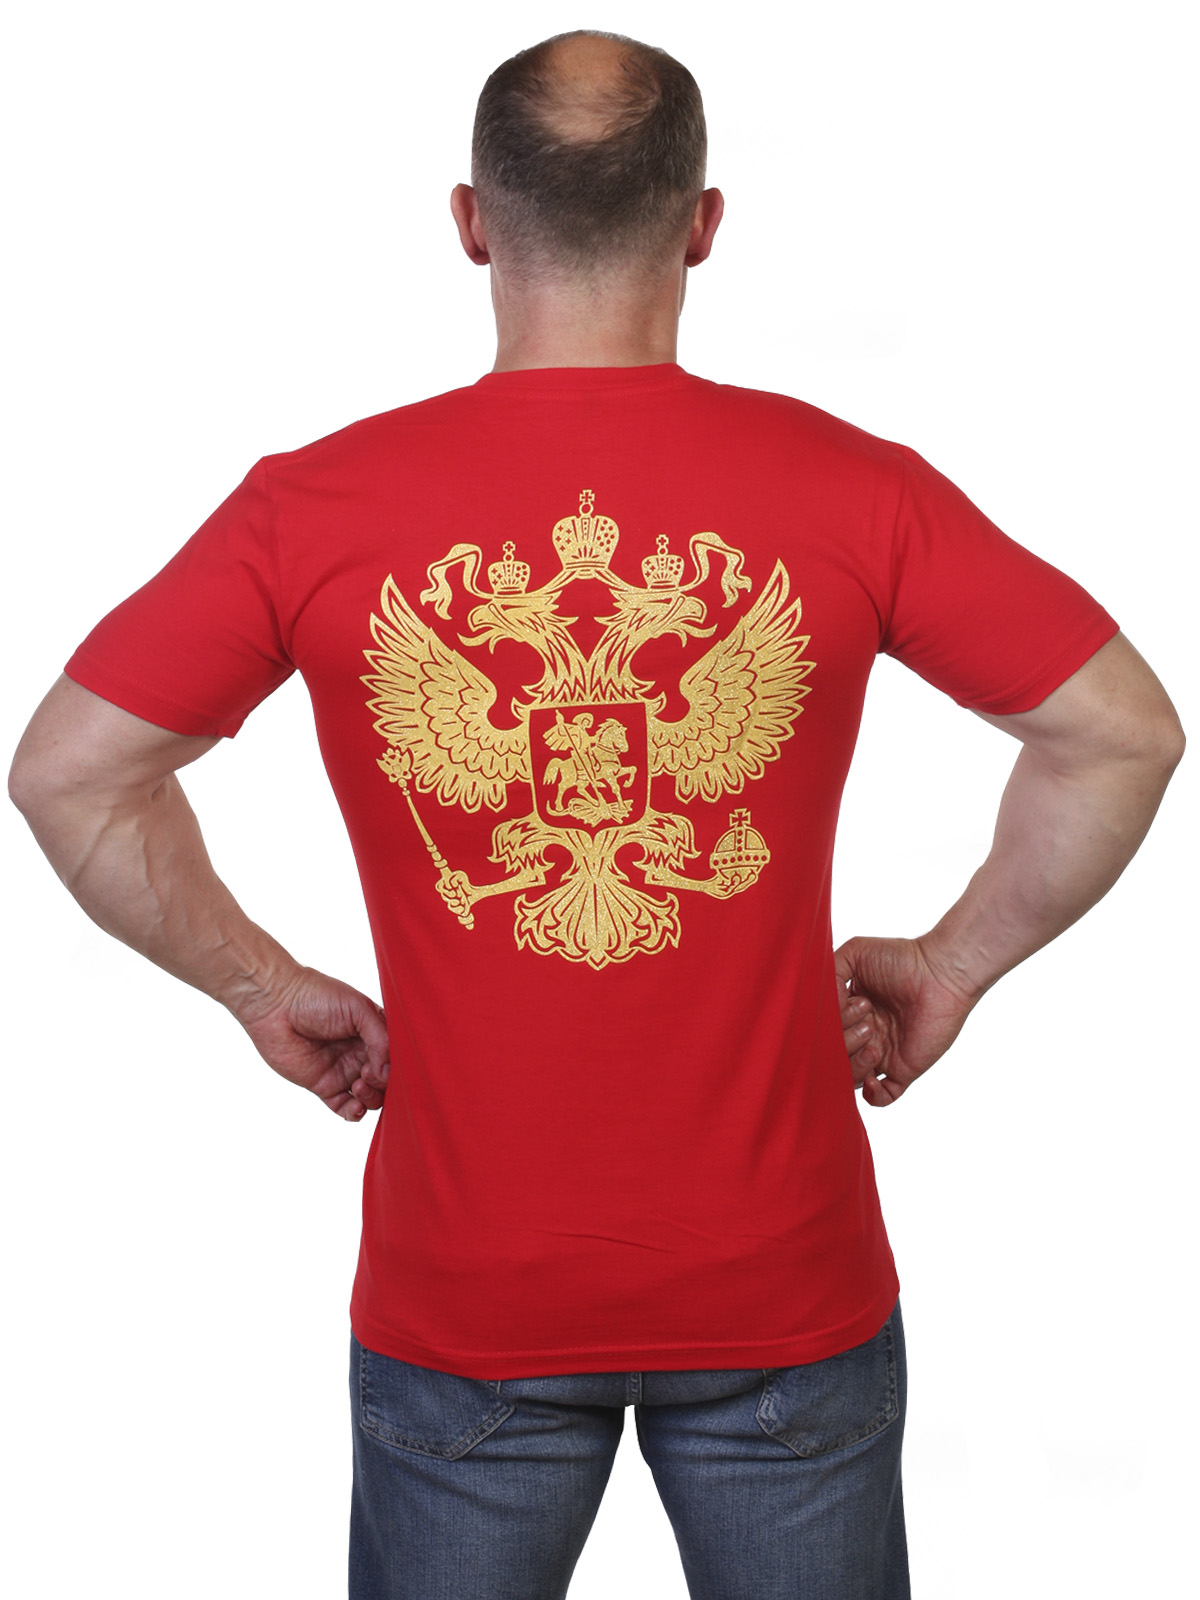 Заказать футболки с гербом России с доставкой и самовывозом